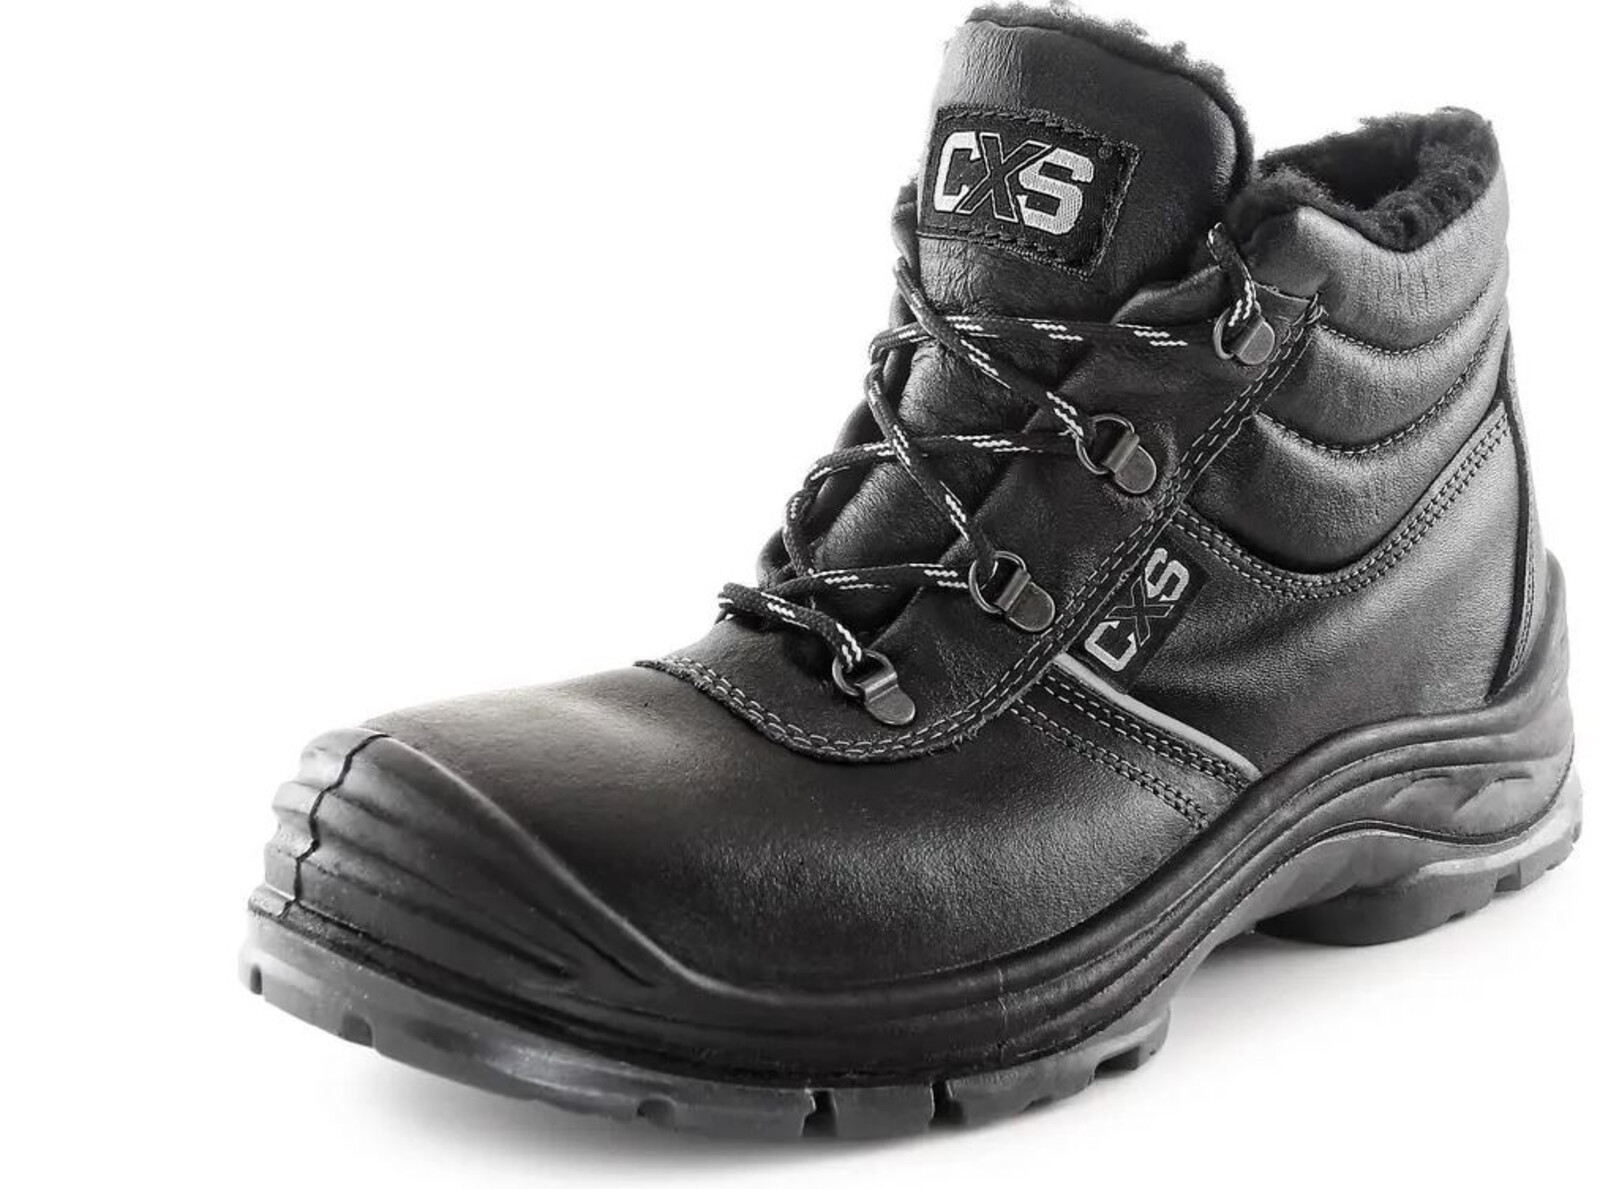 Zimná bezpečnostná členková obuv CXS Safety Steel Nickel S3 - veľkosť: 45, farba: čierna